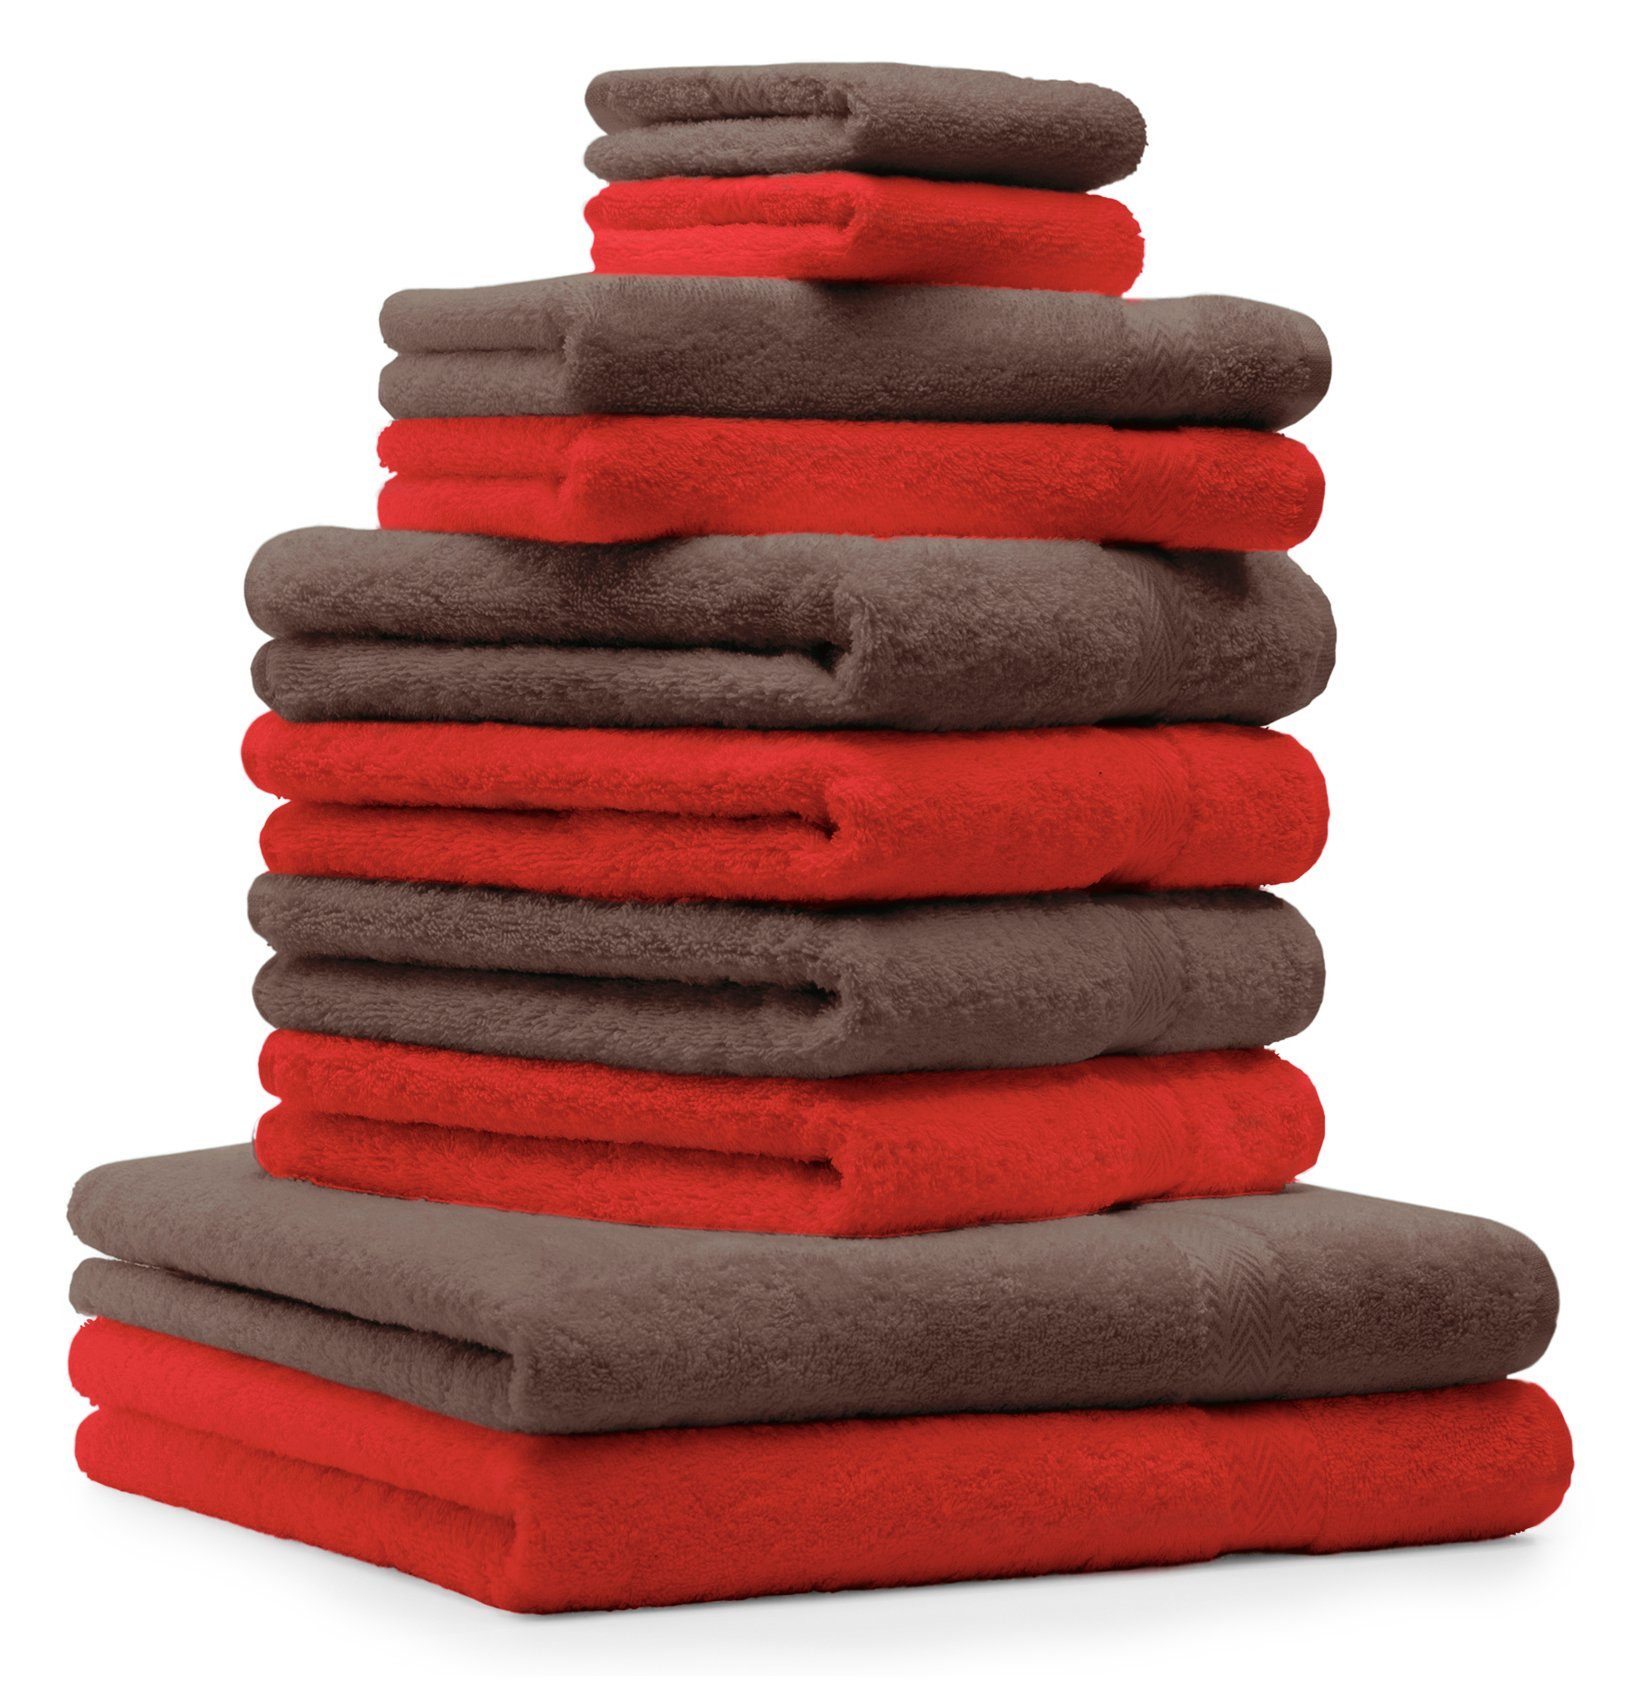 Betz Handtuch Set 10-TLG. Handtuch-Set Premium Farbe Rot & Nussbraun, 100% Baumwolle, (10-tlg) | Handtuch-Sets